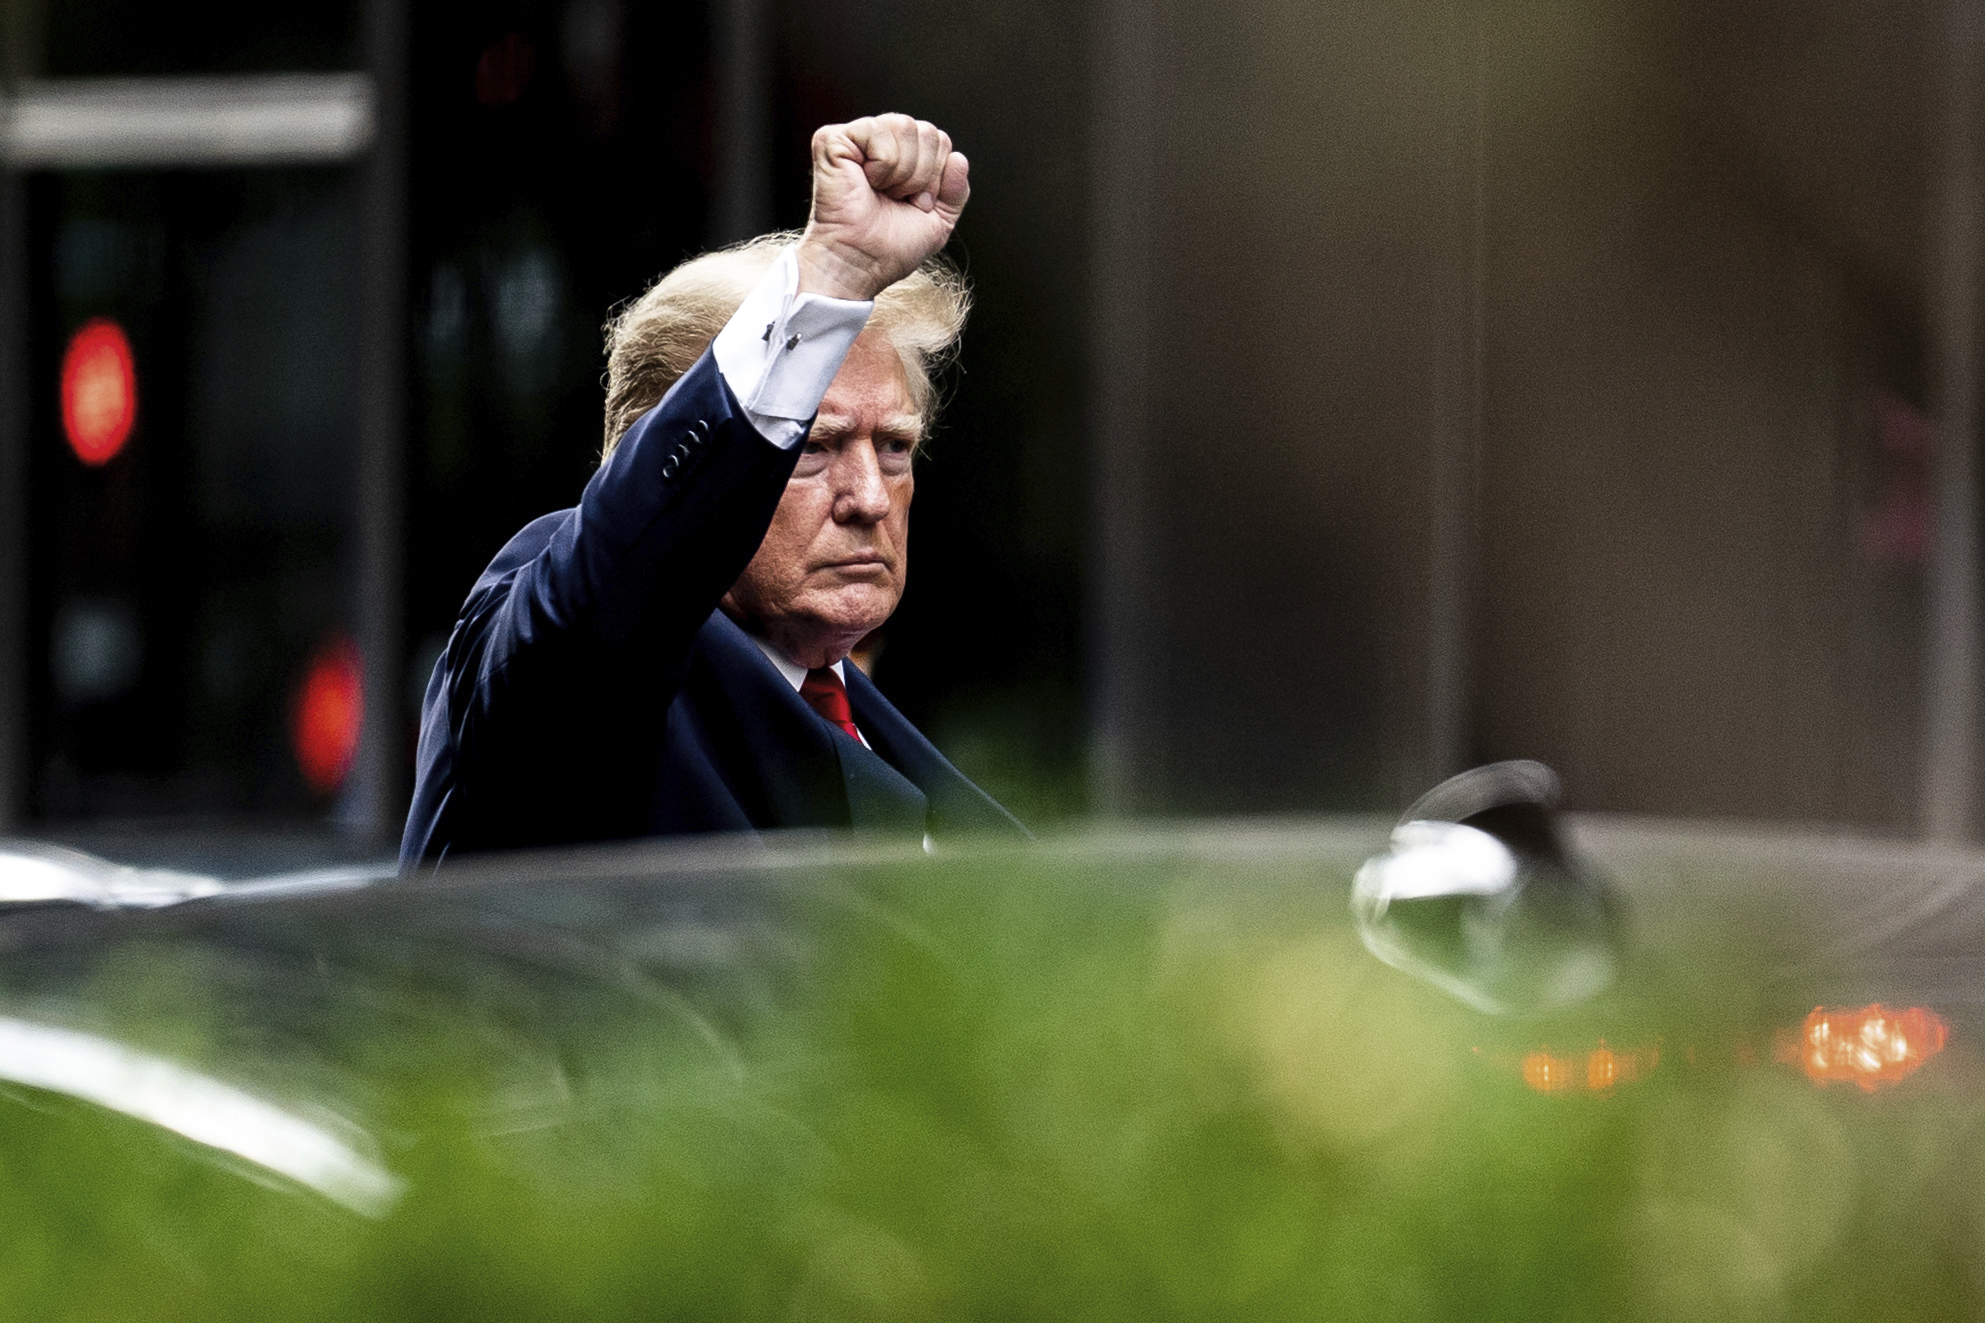 President Trump raises fist...